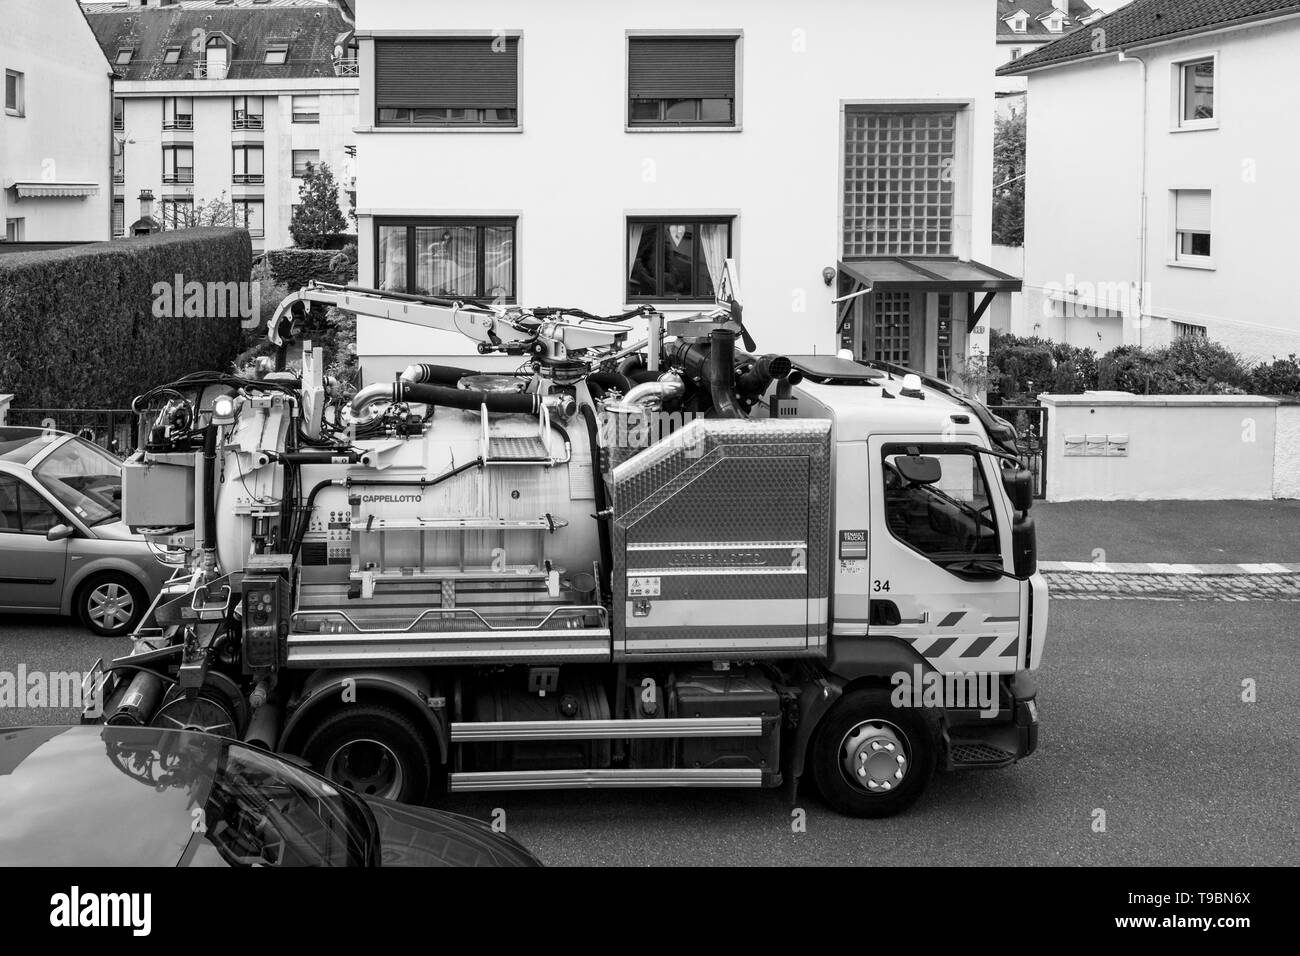 Paris, Frankreich, 24.April 2019: Neue Abwasser Lkw auf der Straße in den Prozess bis zur öffentlichen Kanalisation überläuft, reinigen Pipelines und potenzielle Umweltverschmutzung Schwarz/Weiß-Bild Stockfoto